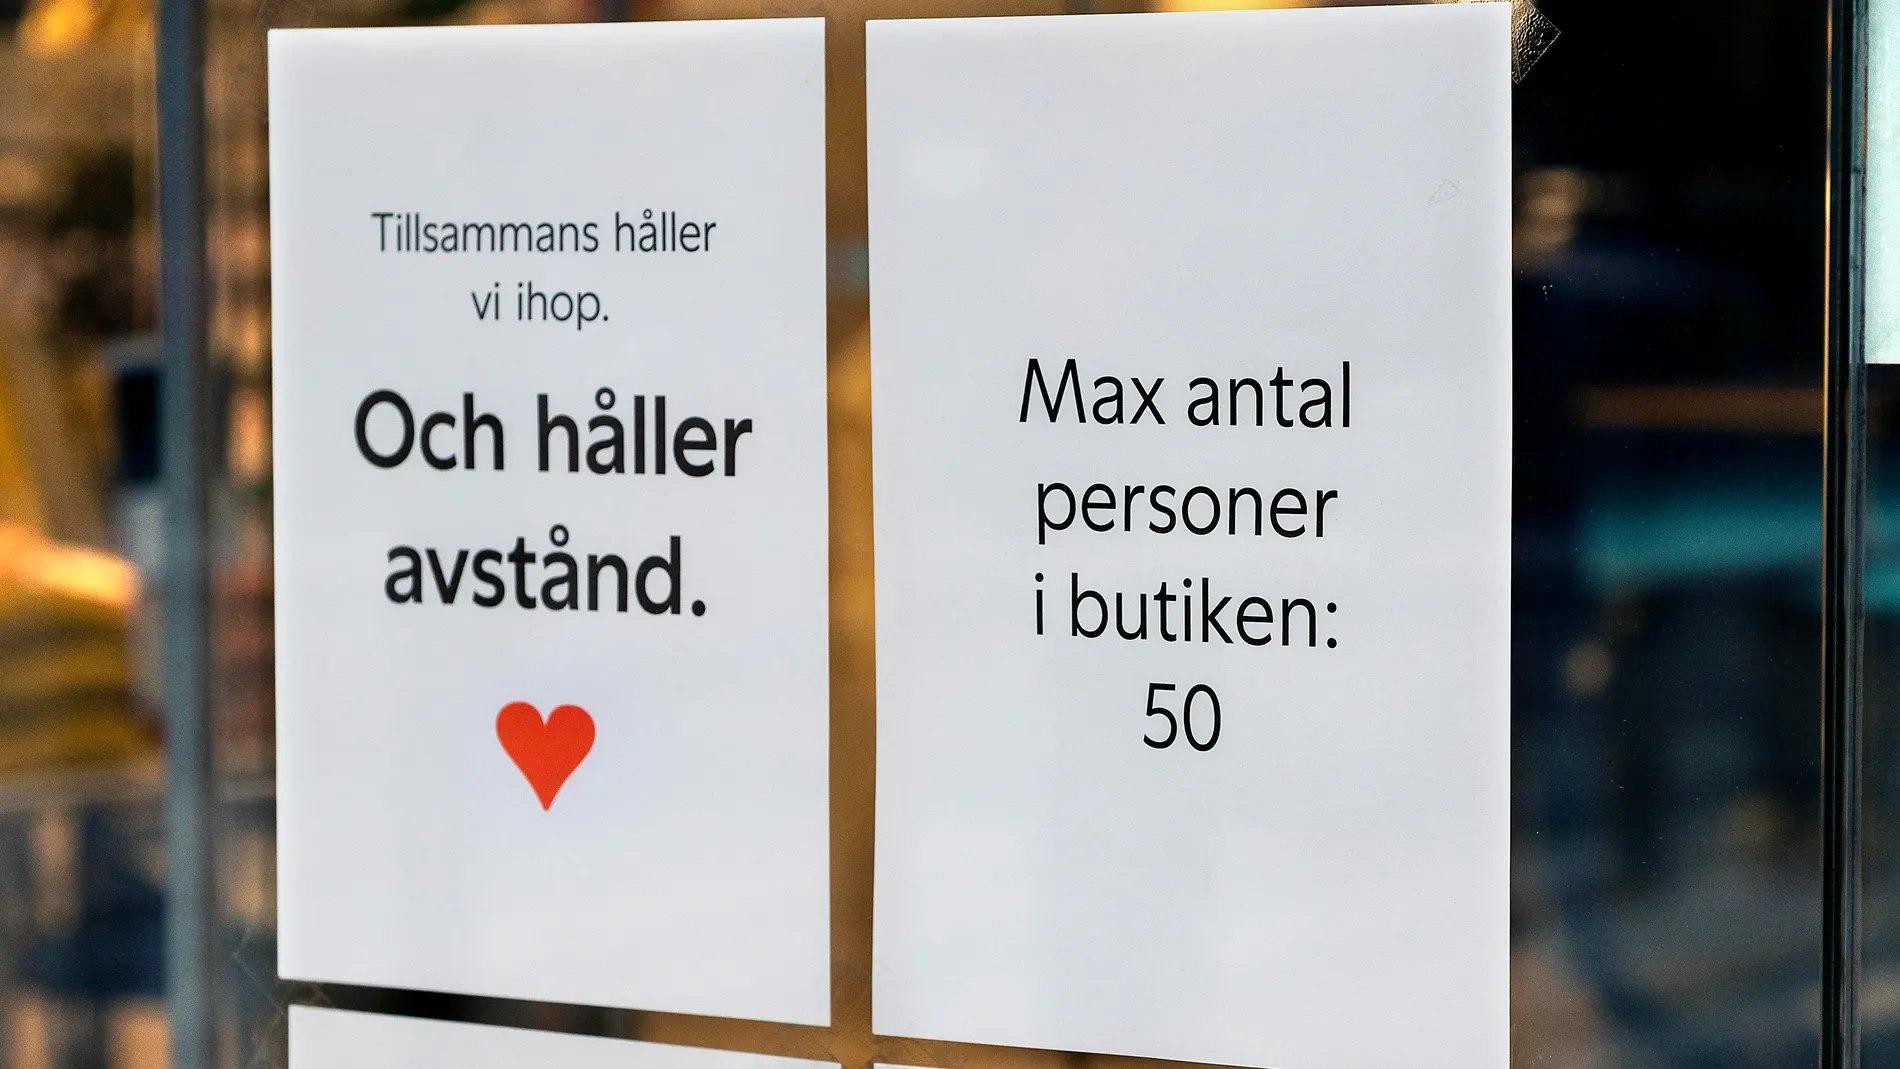 Un escaparate de una tienda de Estocolmo insta a mantener la distancia y limita el aforo a 50 clientes